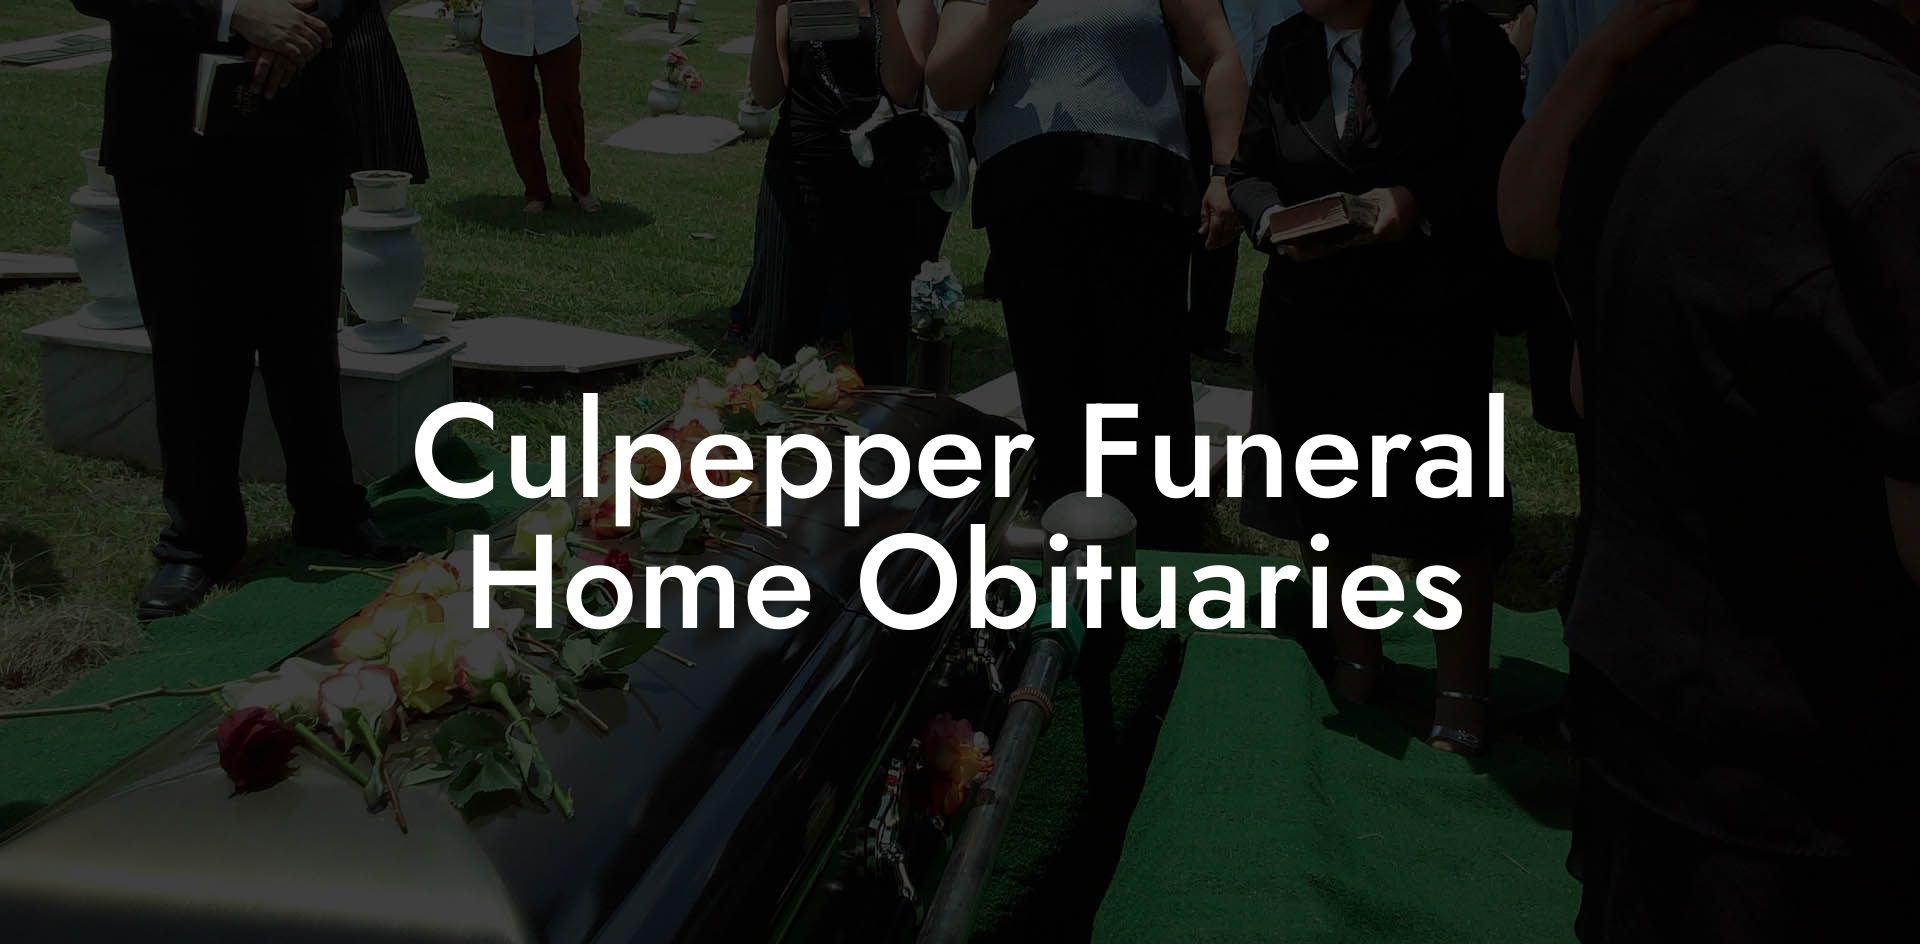 Culpepper Funeral Home Obituaries